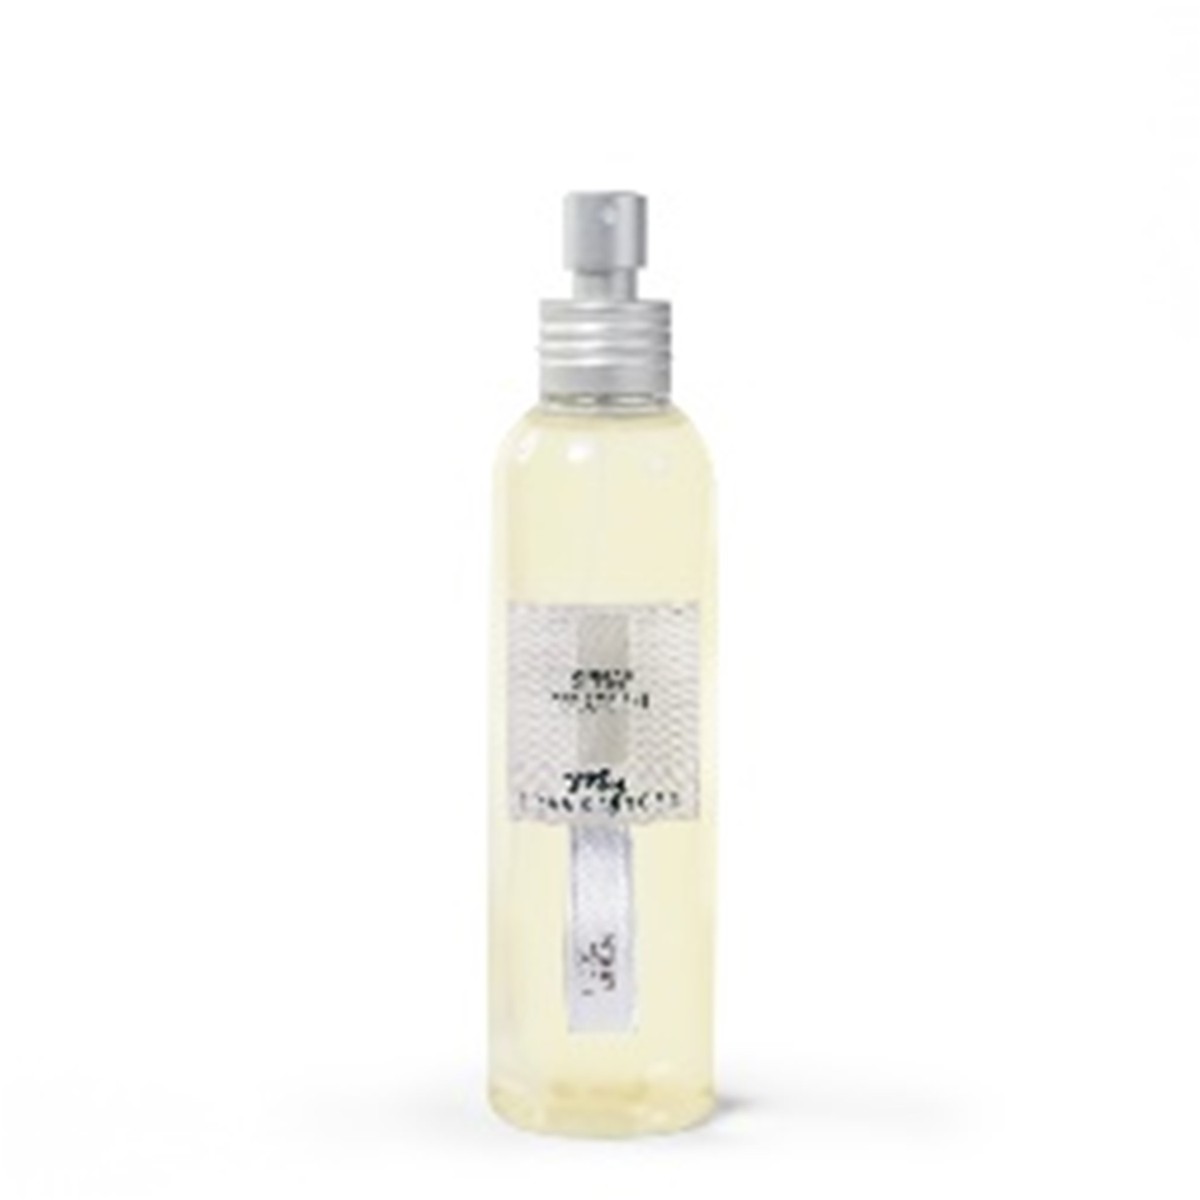  LA CLASSICA Fragrance Spray pure linen  150ml